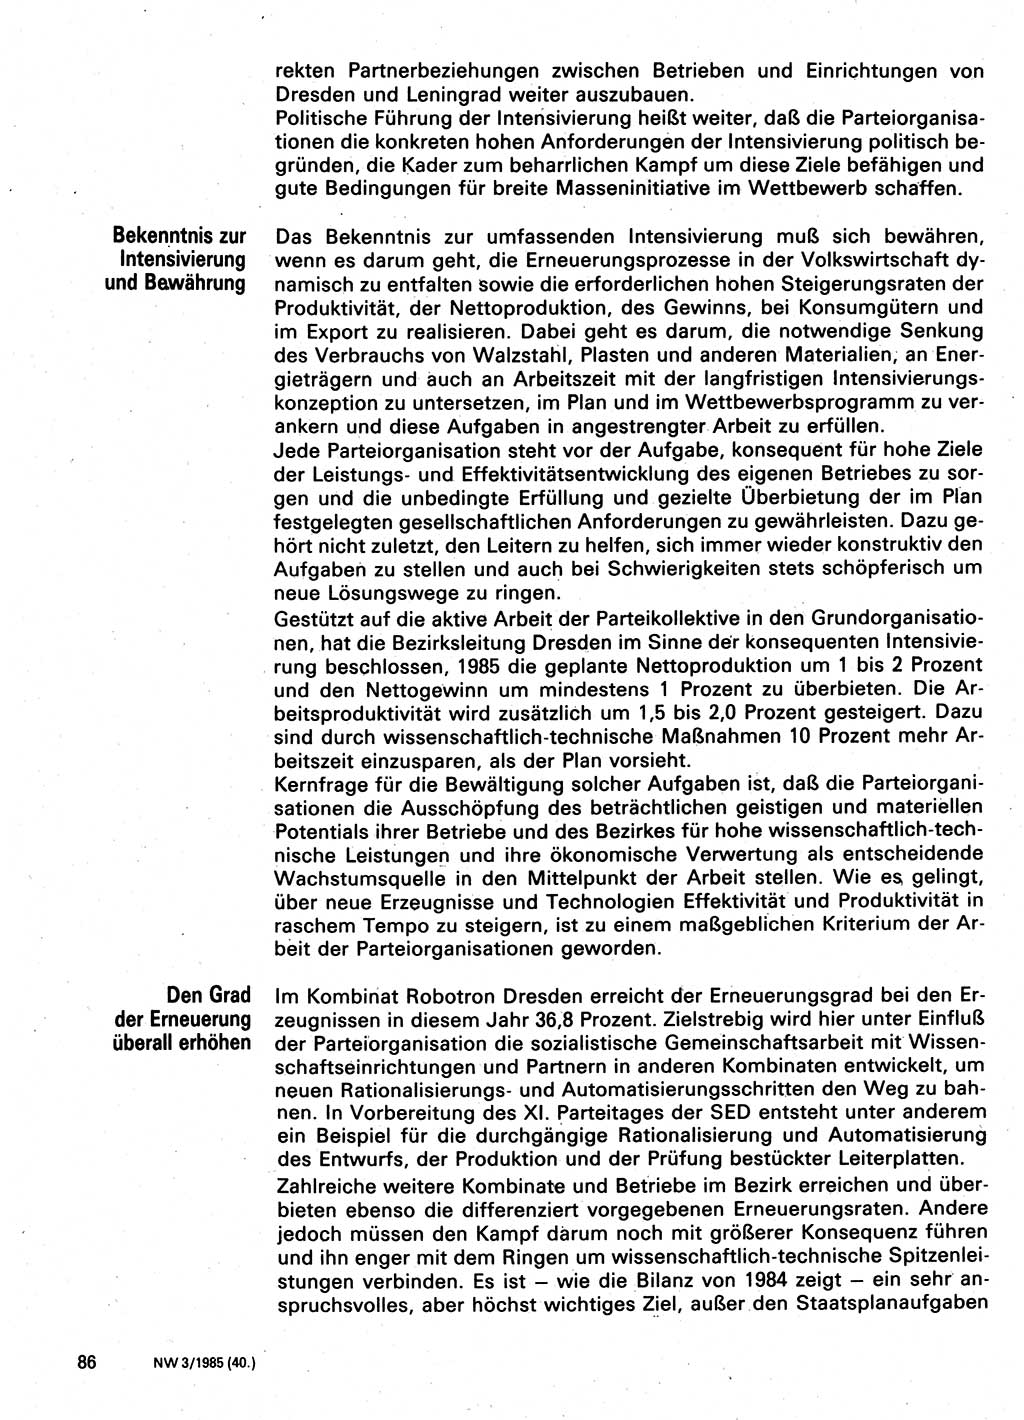 Neuer Weg (NW), Organ des Zentralkomitees (ZK) der SED (Sozialistische Einheitspartei Deutschlands) für Fragen des Parteilebens, 40. Jahrgang [Deutsche Demokratische Republik (DDR)] 1985, Seite 86 (NW ZK SED DDR 1985, S. 86)